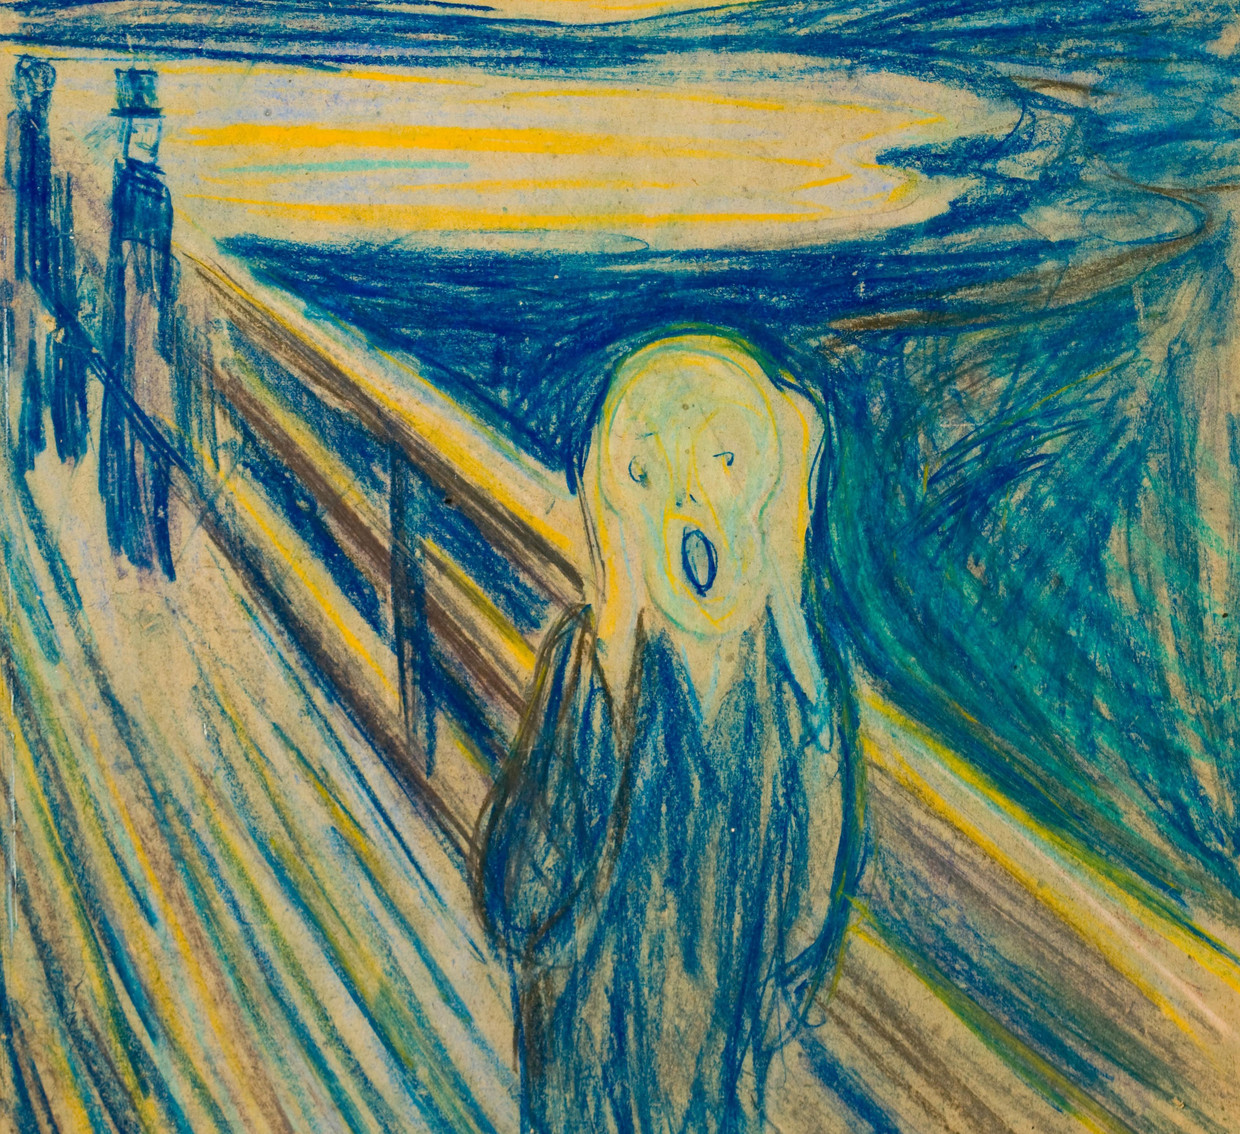 De schreeuw van de Noorse schilder Edvard Munch drukt het geestelijke leed en de emotionele kwelling uit die de schilder tijdens bepaalde perioden in zijn leven heeft gevoeld. Beeld Munchmuseum Oslo